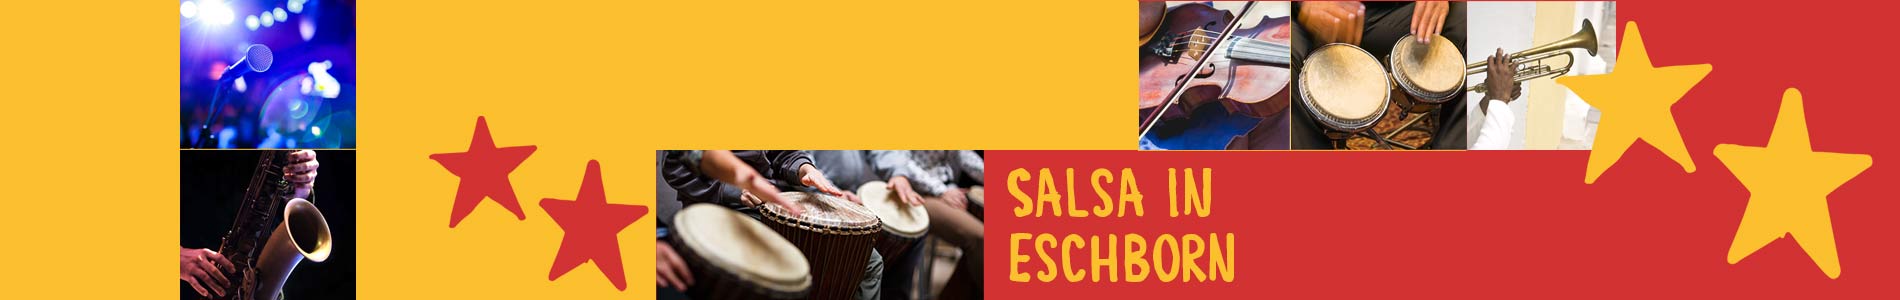 Salsa in Eschborn – Salsa lernen und tanzen, Tanzkurse, Partys, Veranstaltungen